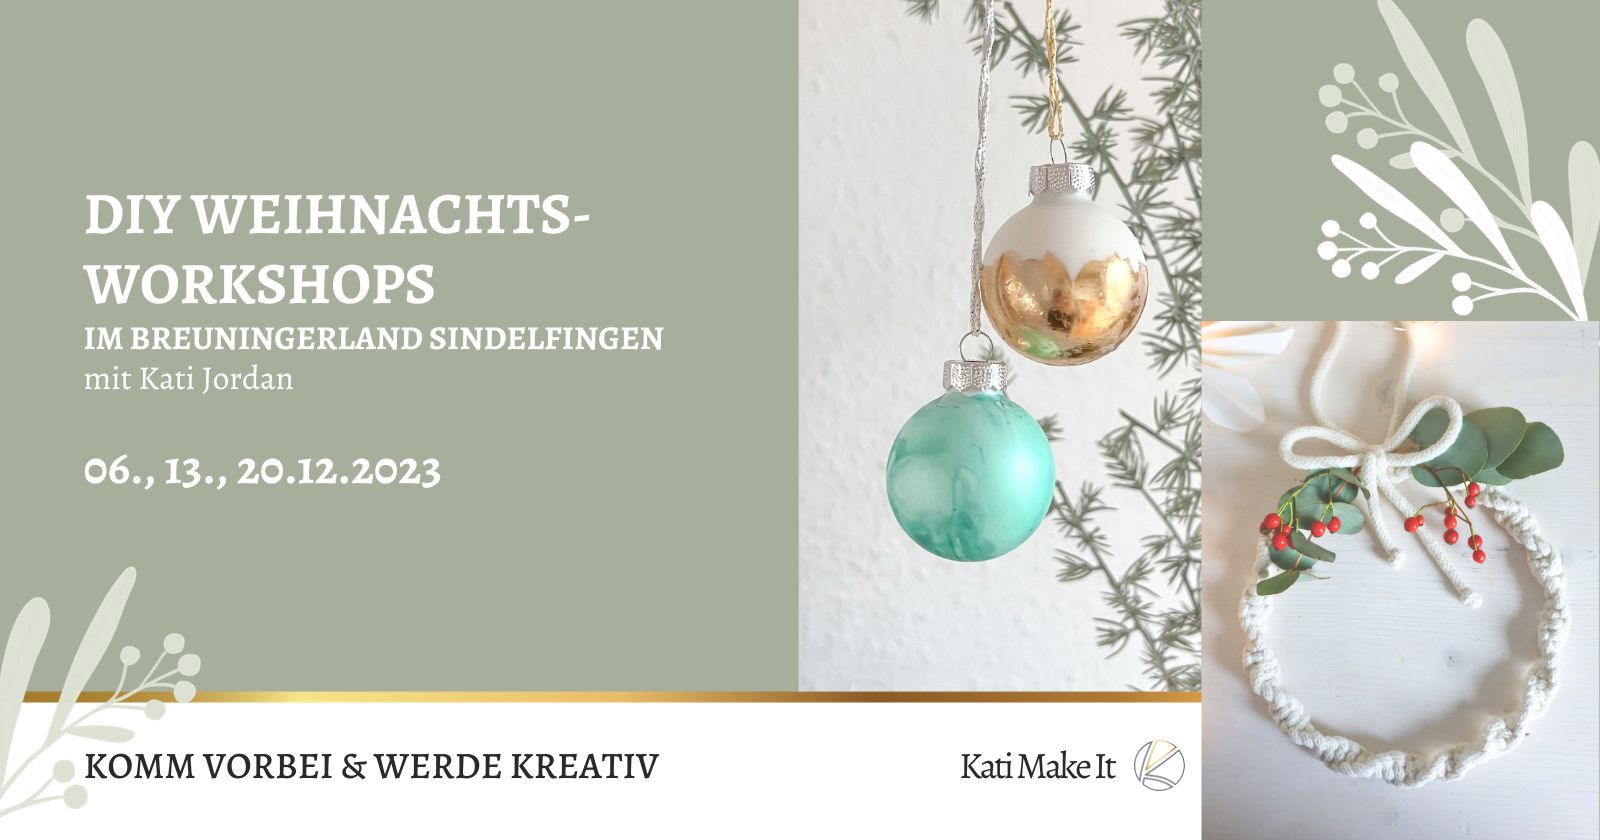 Erlebe festliche Kreativität im Breuningerland Sindelfingen: Kostenlose DIY-Workshops mit Kati Make It 06., 13. & 20.12.2023! Komm vorbei und lass dich inspirieren.